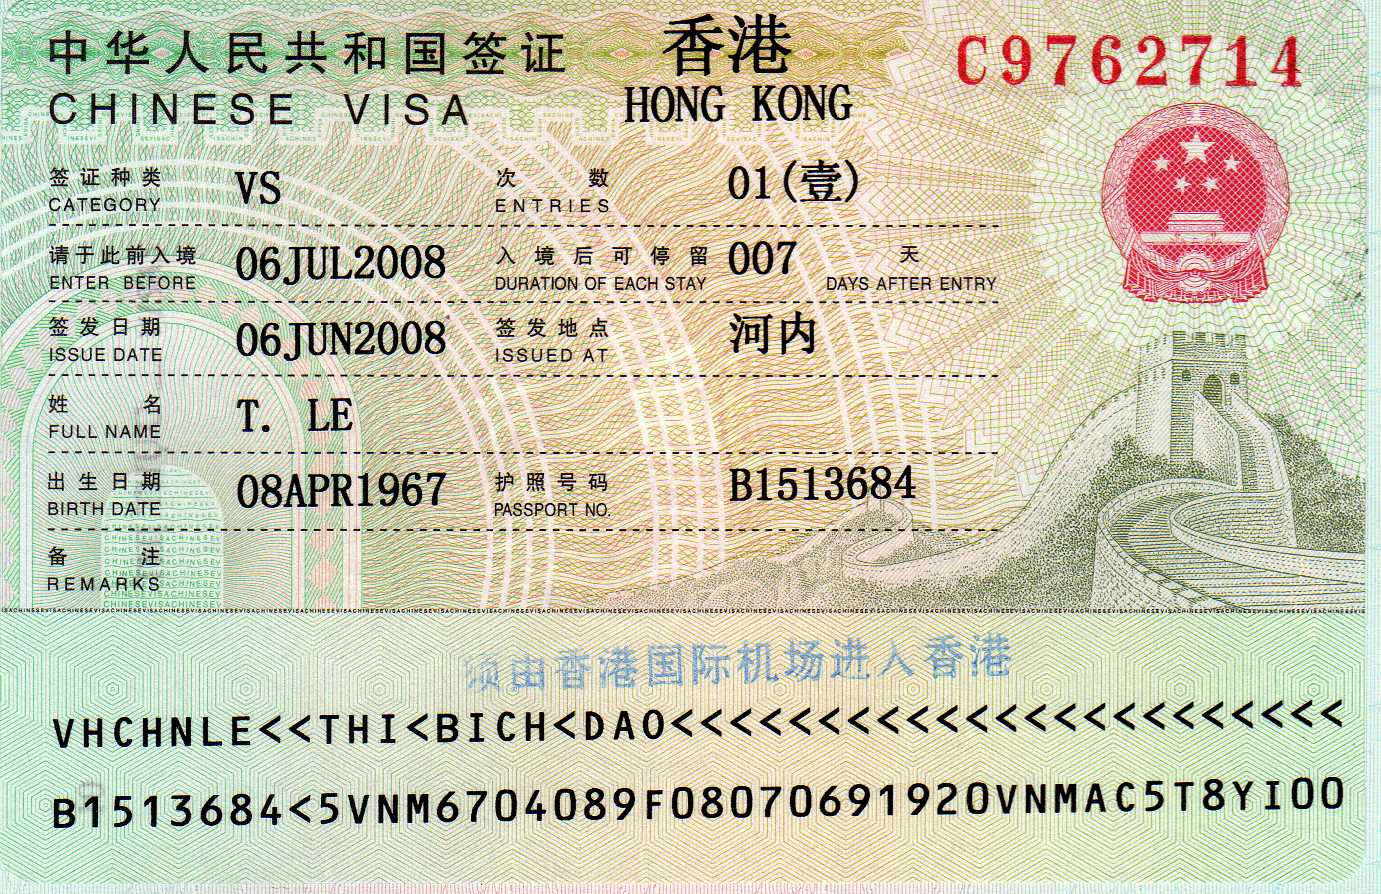 /files/images/Visa/Chau%20a/visa-hong-kong-21.jpg